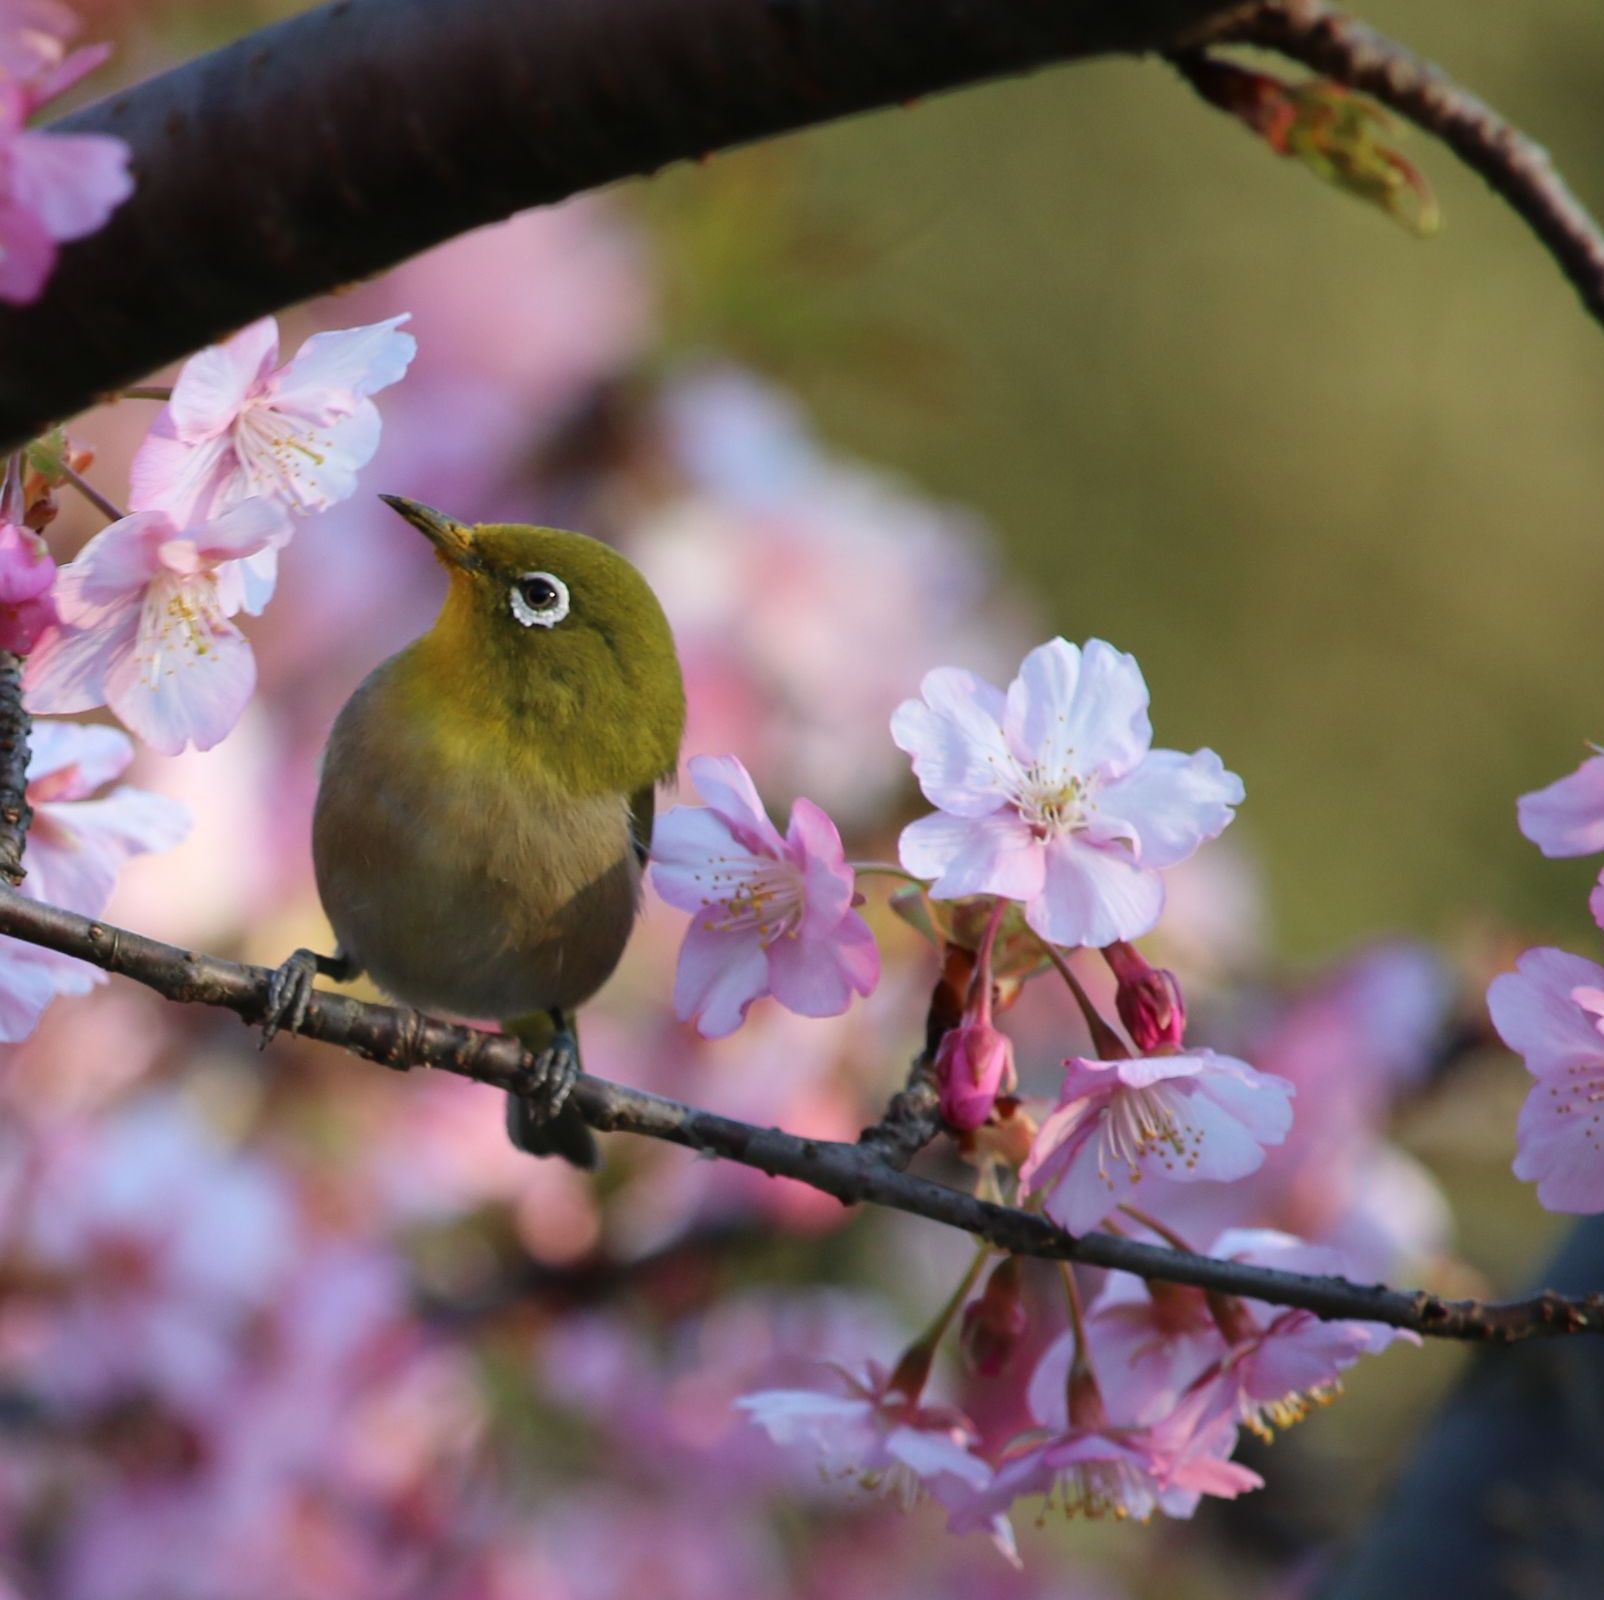 ４８２ 早咲きの桜と可愛い小鳥 不育症 着床障害のブログ ドクター青木の日々感じていること Bloguru